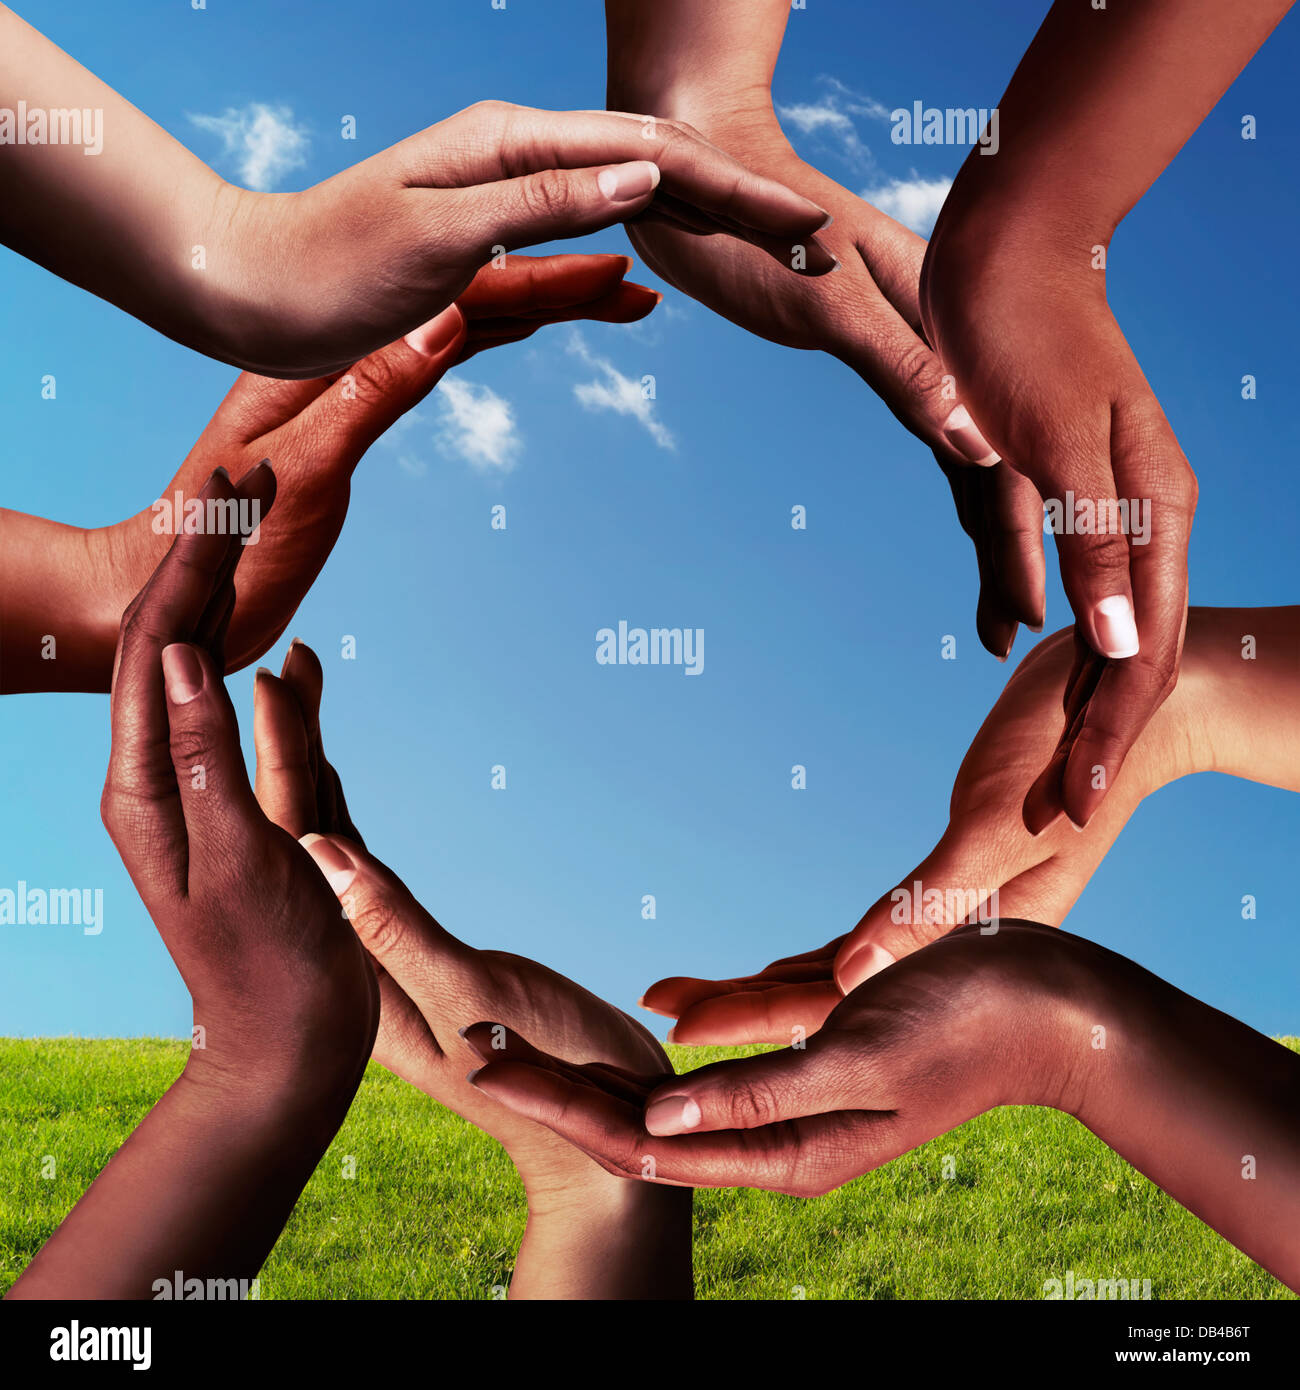 Símbolo de paz y unidad conceptual de diferentes etnias africanas negras manos haciendo un círculo junto a blue sky Foto de stock